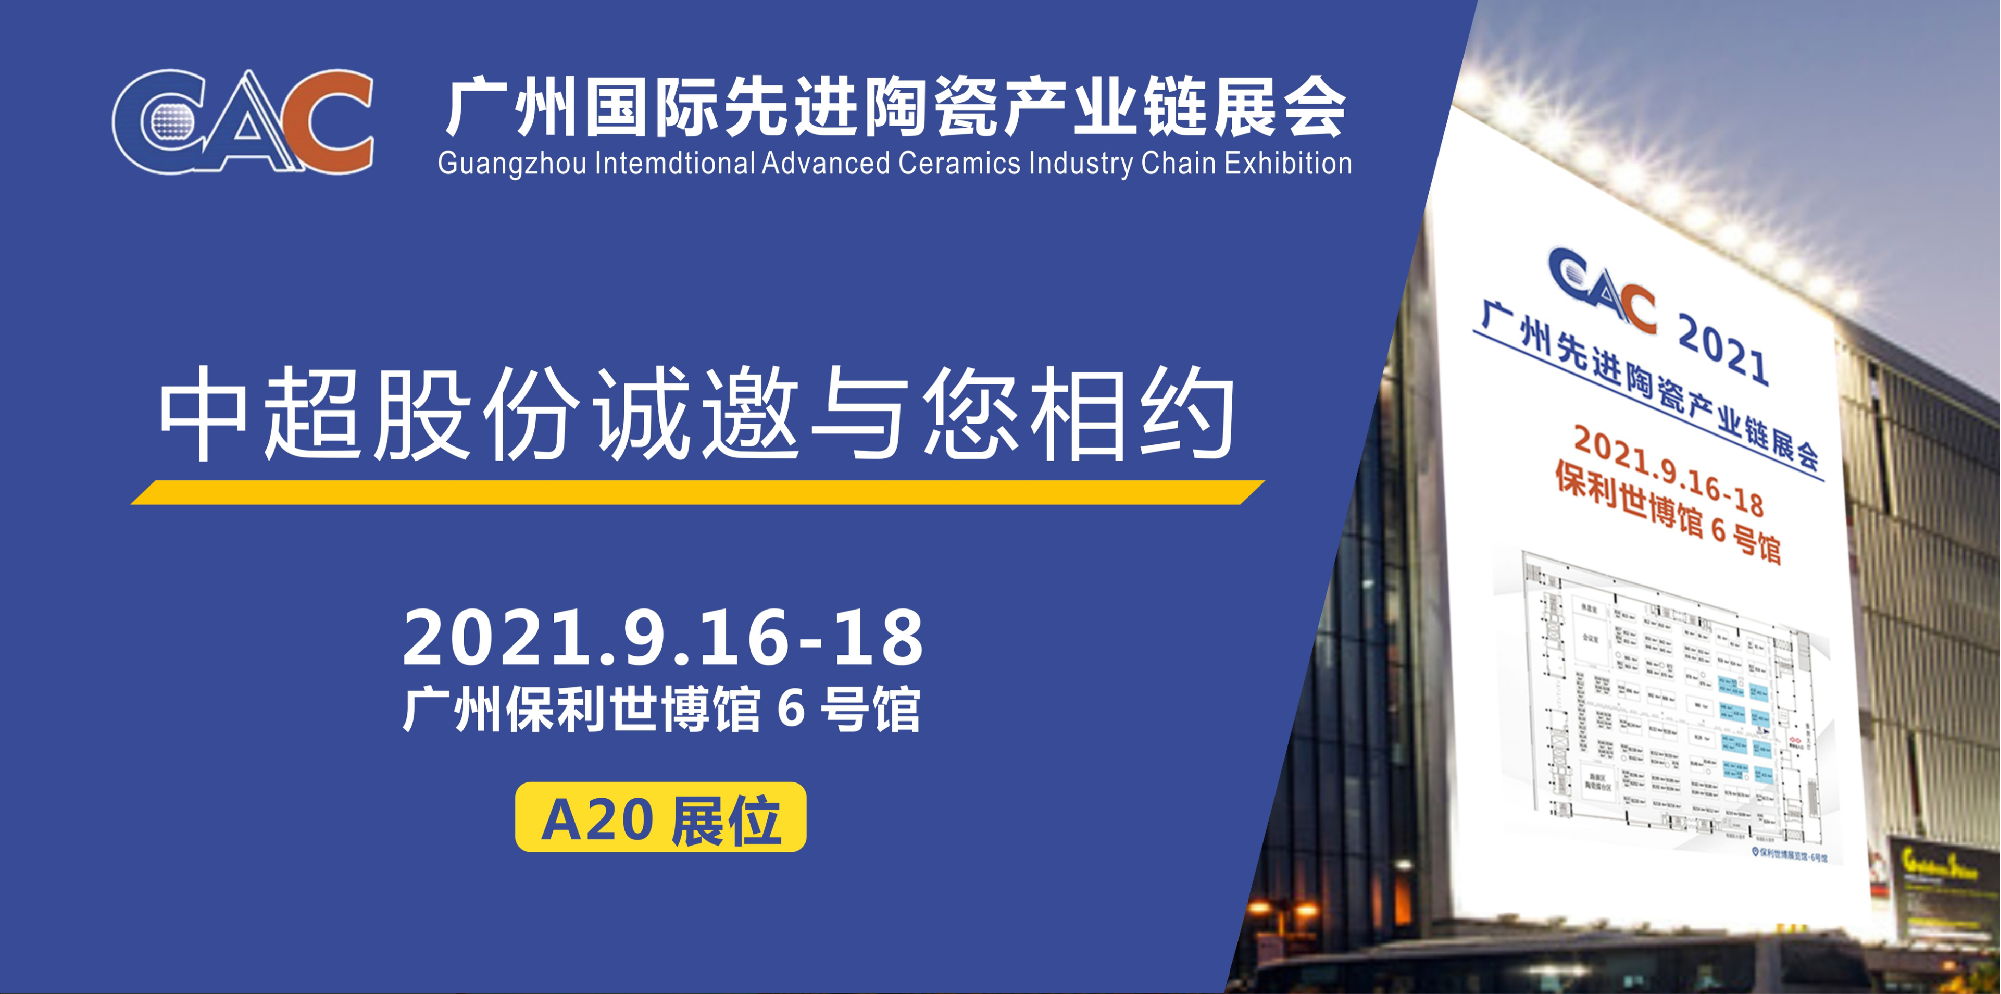 邀请函 I 中超股份与您相约CAC 2021广州国际先进陶瓷产业链展会（9月16-18日）